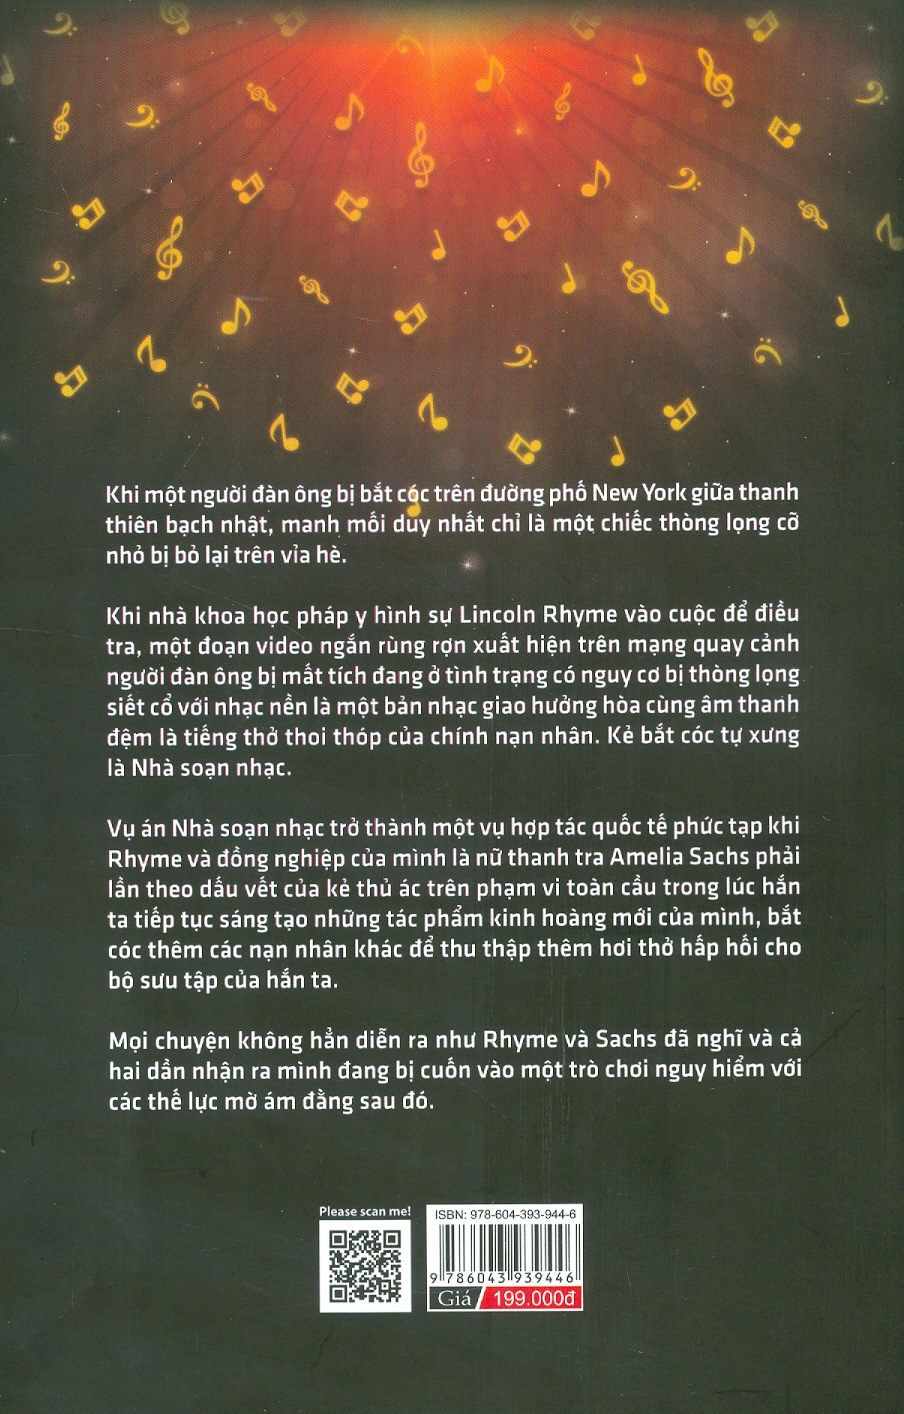 Thời Khắc Sinh Tử - Jeffery Deaver - Nguyễn Mai Trang dịch - (bìa mềm)